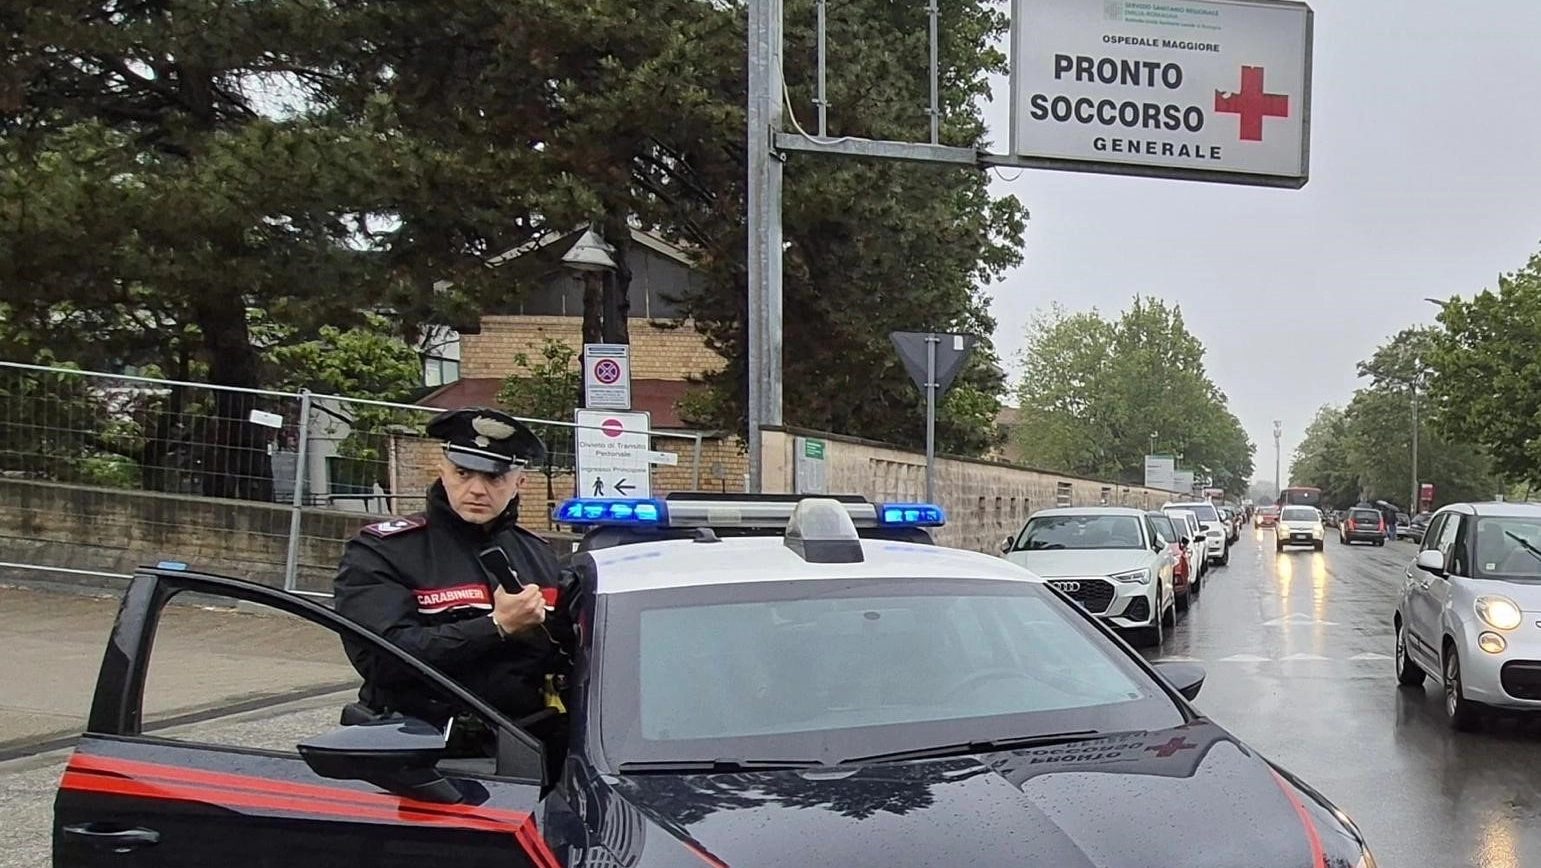 Caos all’ospedale Maggiore di Bologna, l'uomo ha anche tentato di sfilare la pistola d'ordinanza a uno dei vigilantes